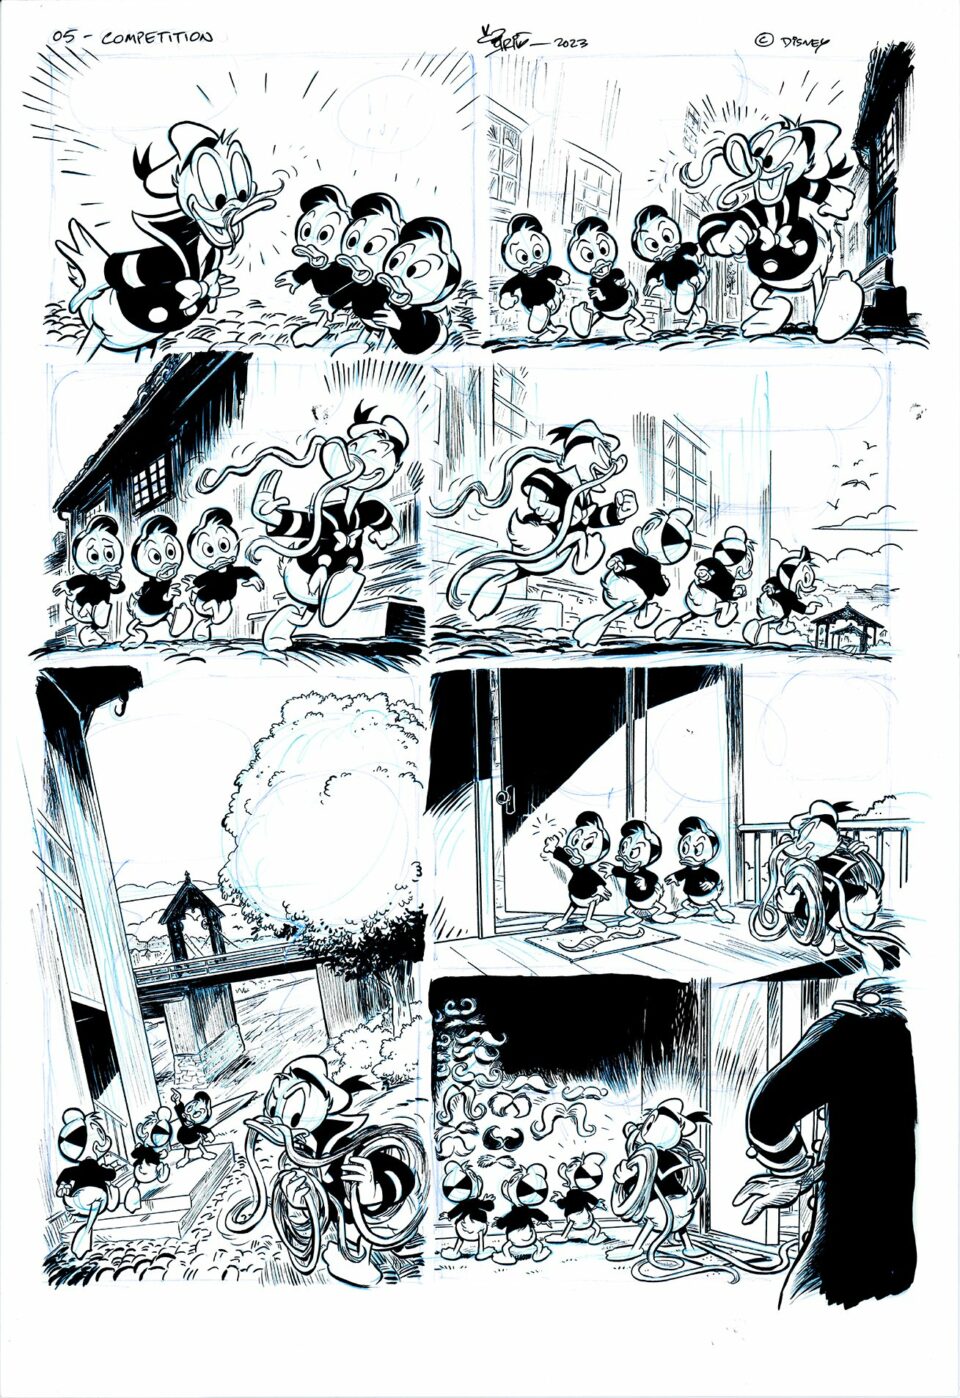 Tegneserieside med svart-hvitt-illustrasjoner av Mikke Mus og venner i ulike paneler som viser humoristiske interaksjoner og uttrykk.